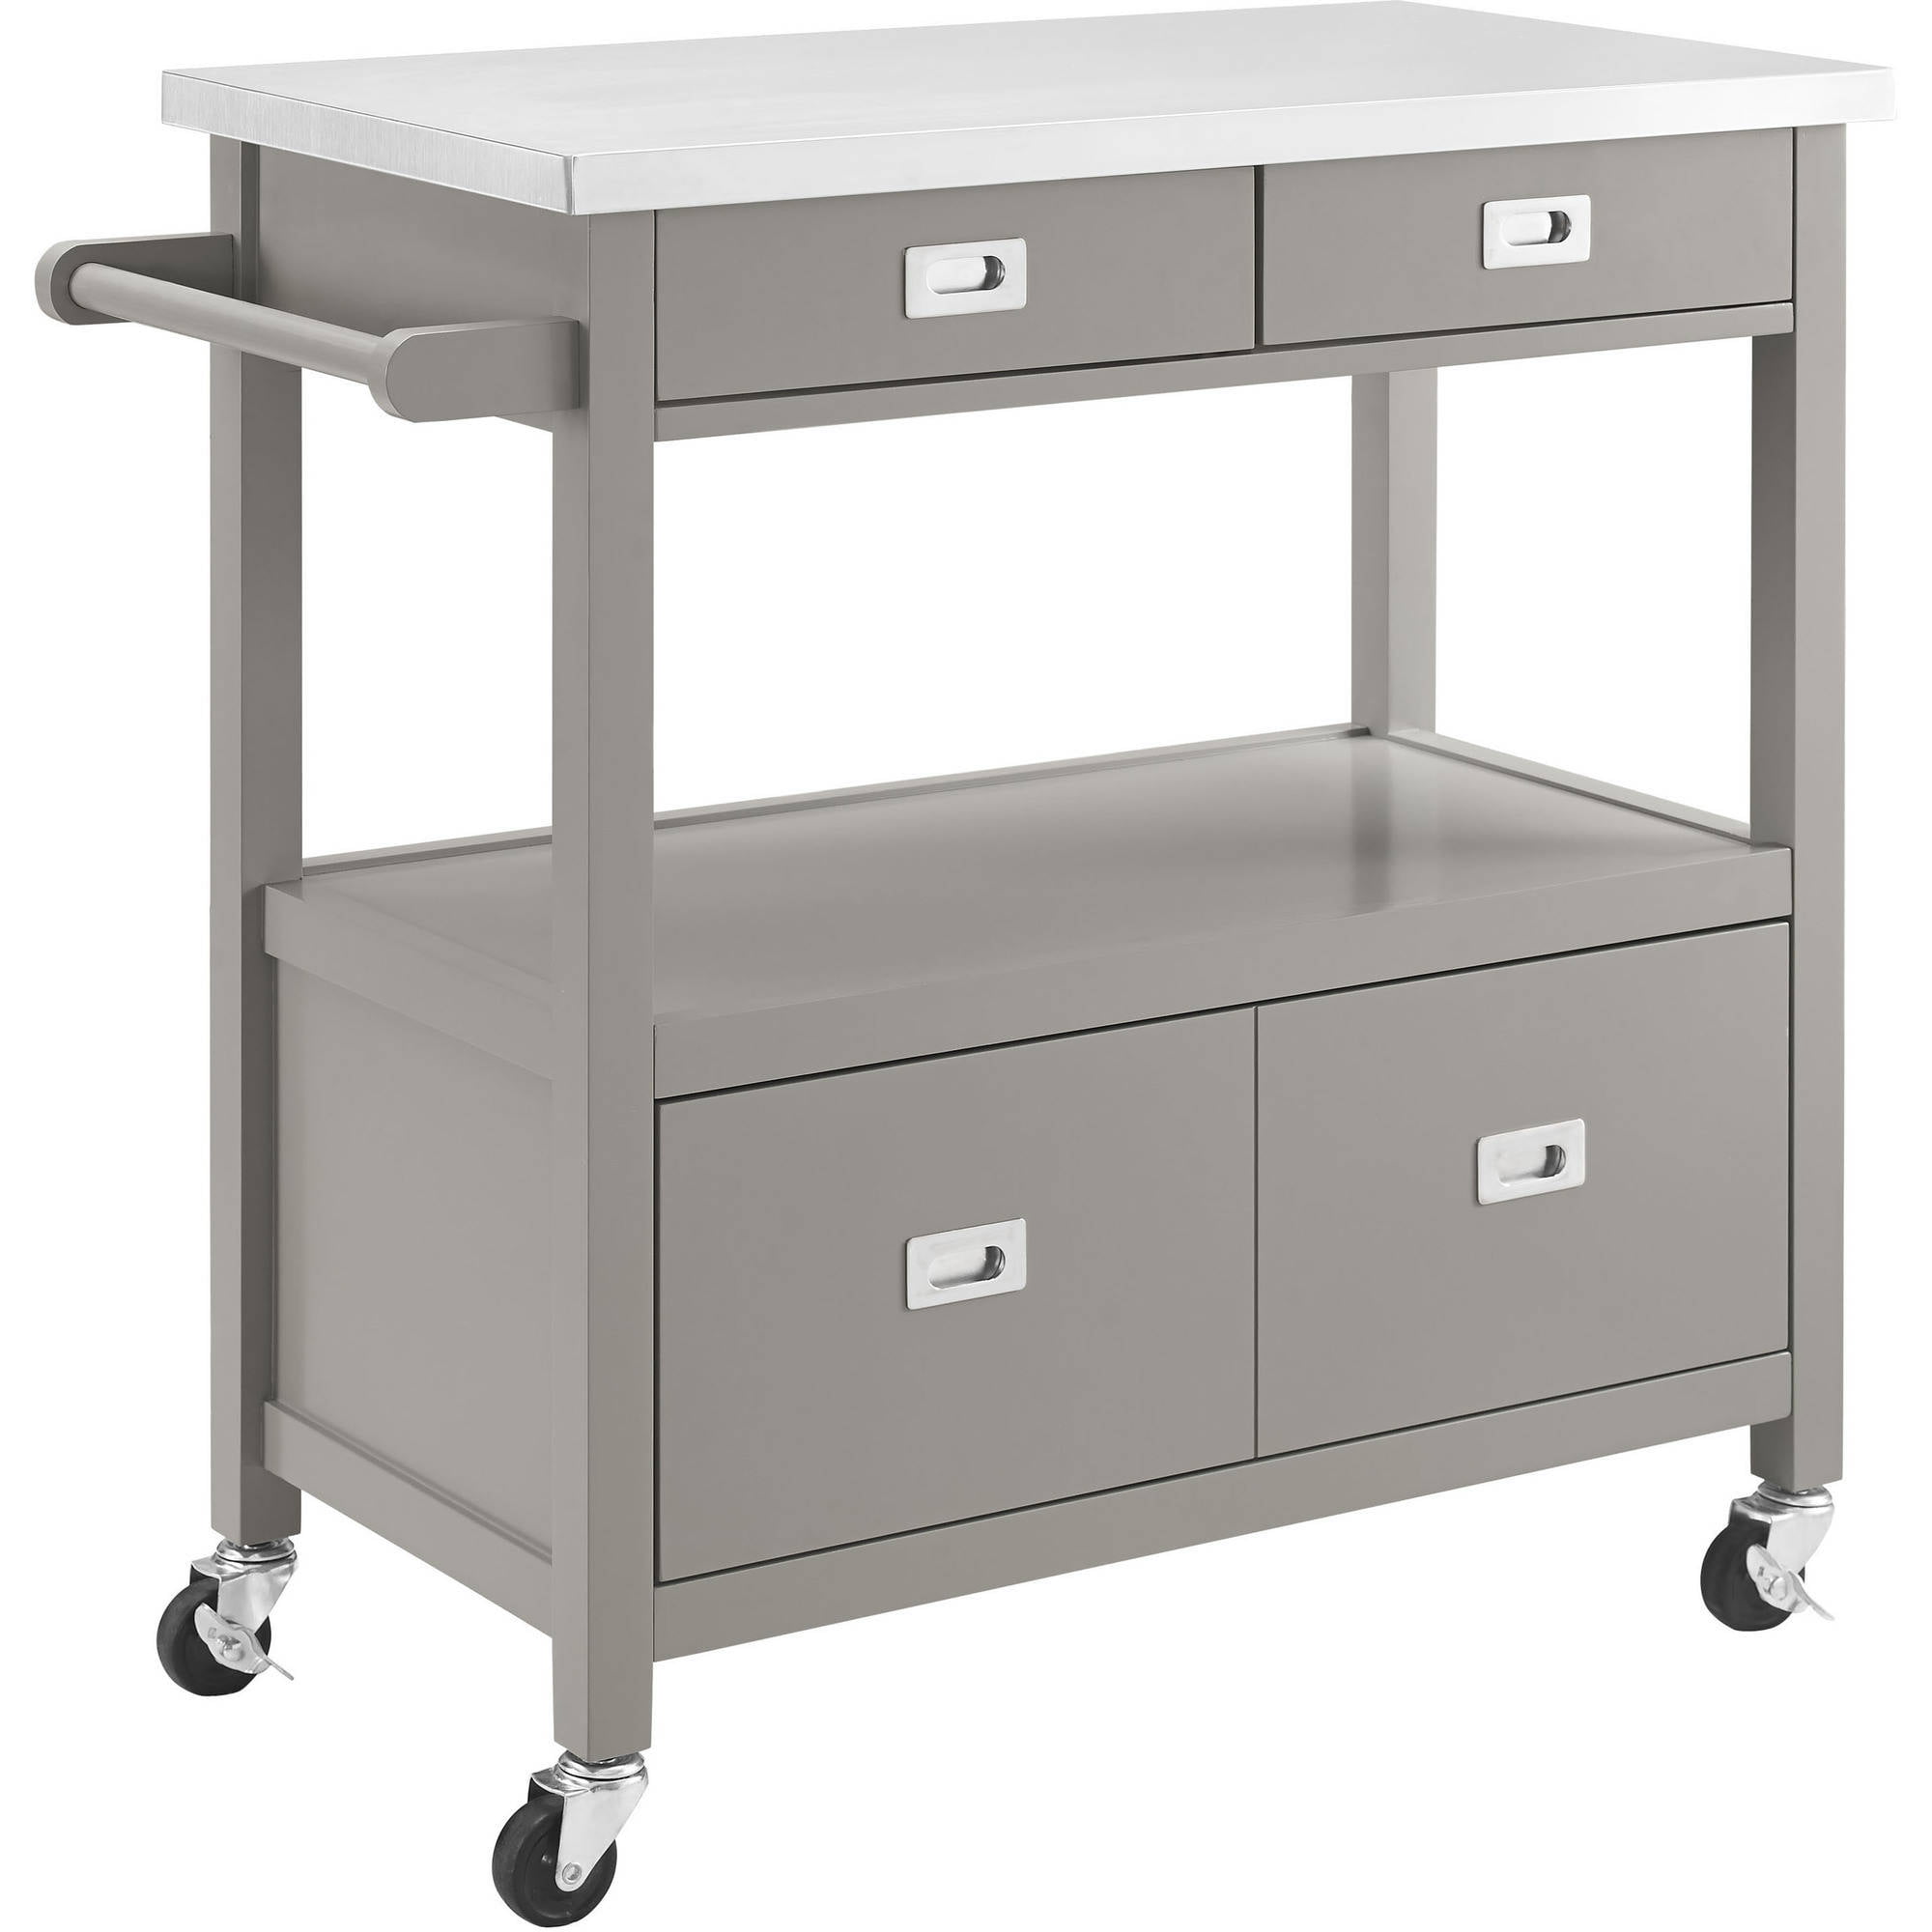 Linon Sydney Kitchen Cart, Gray, Stainless Steel Top, 4 Drawers Kitchen Cart With Stainless Steel Top